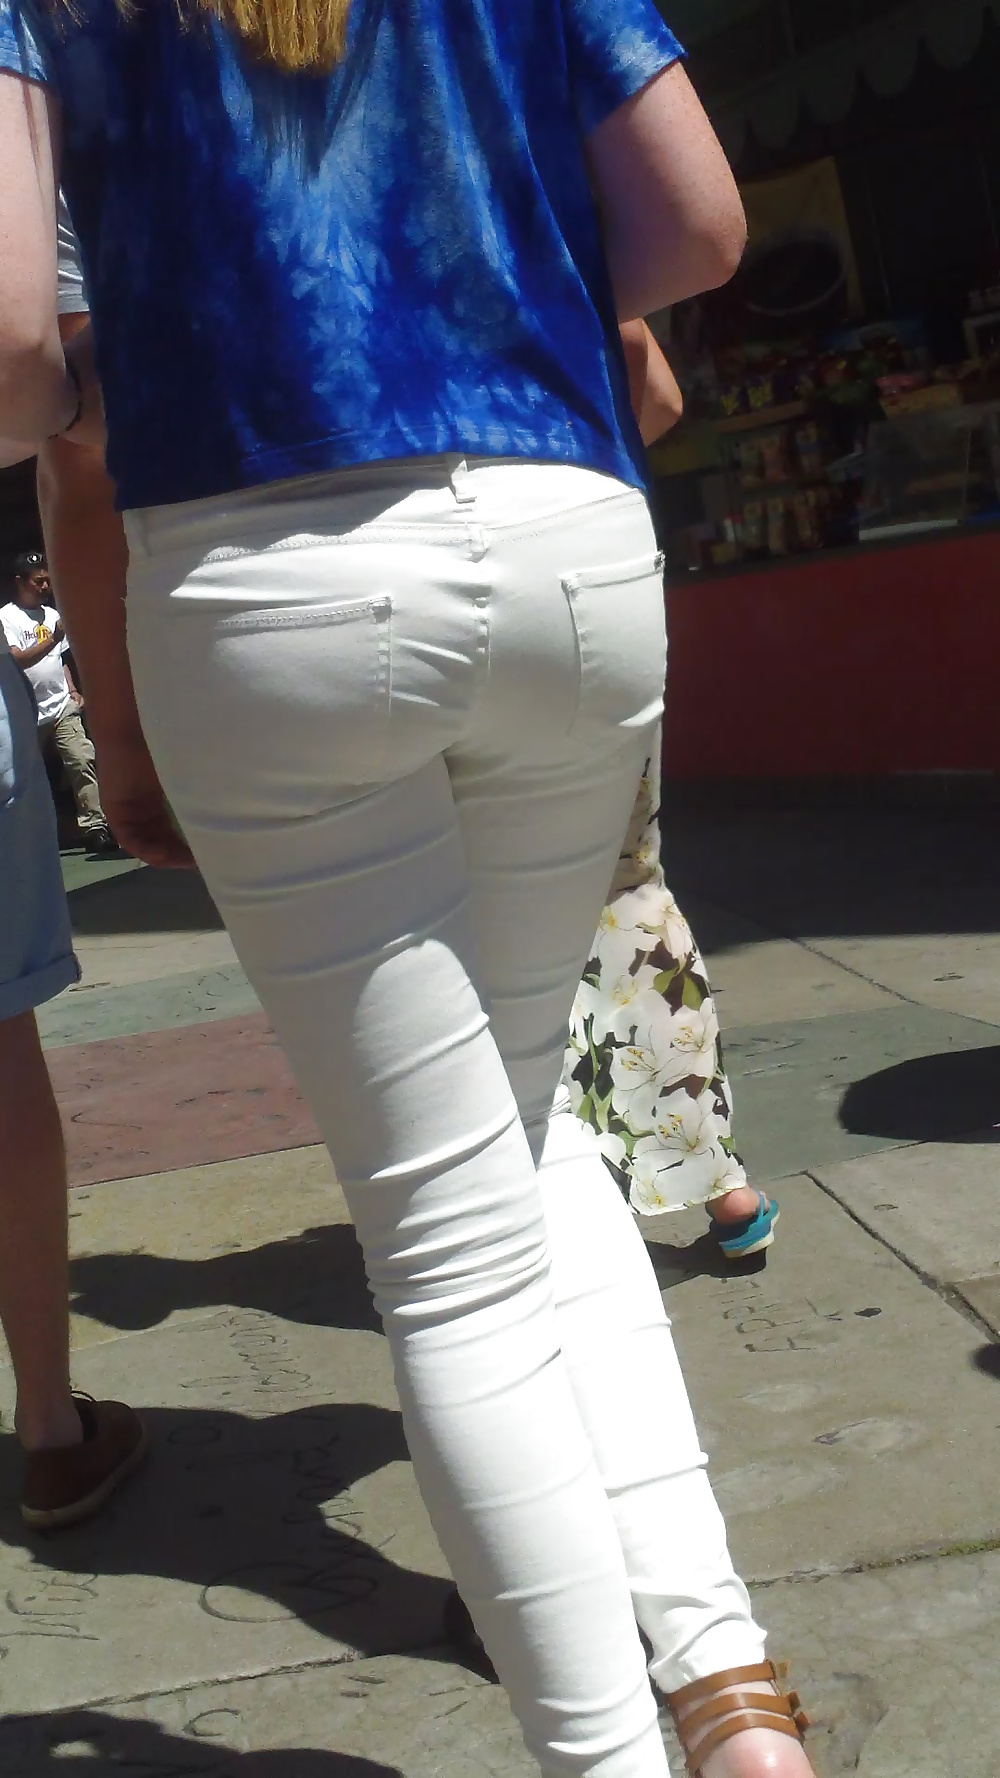 Popular teen girls ass & butt in jeans Part 5 #28733957